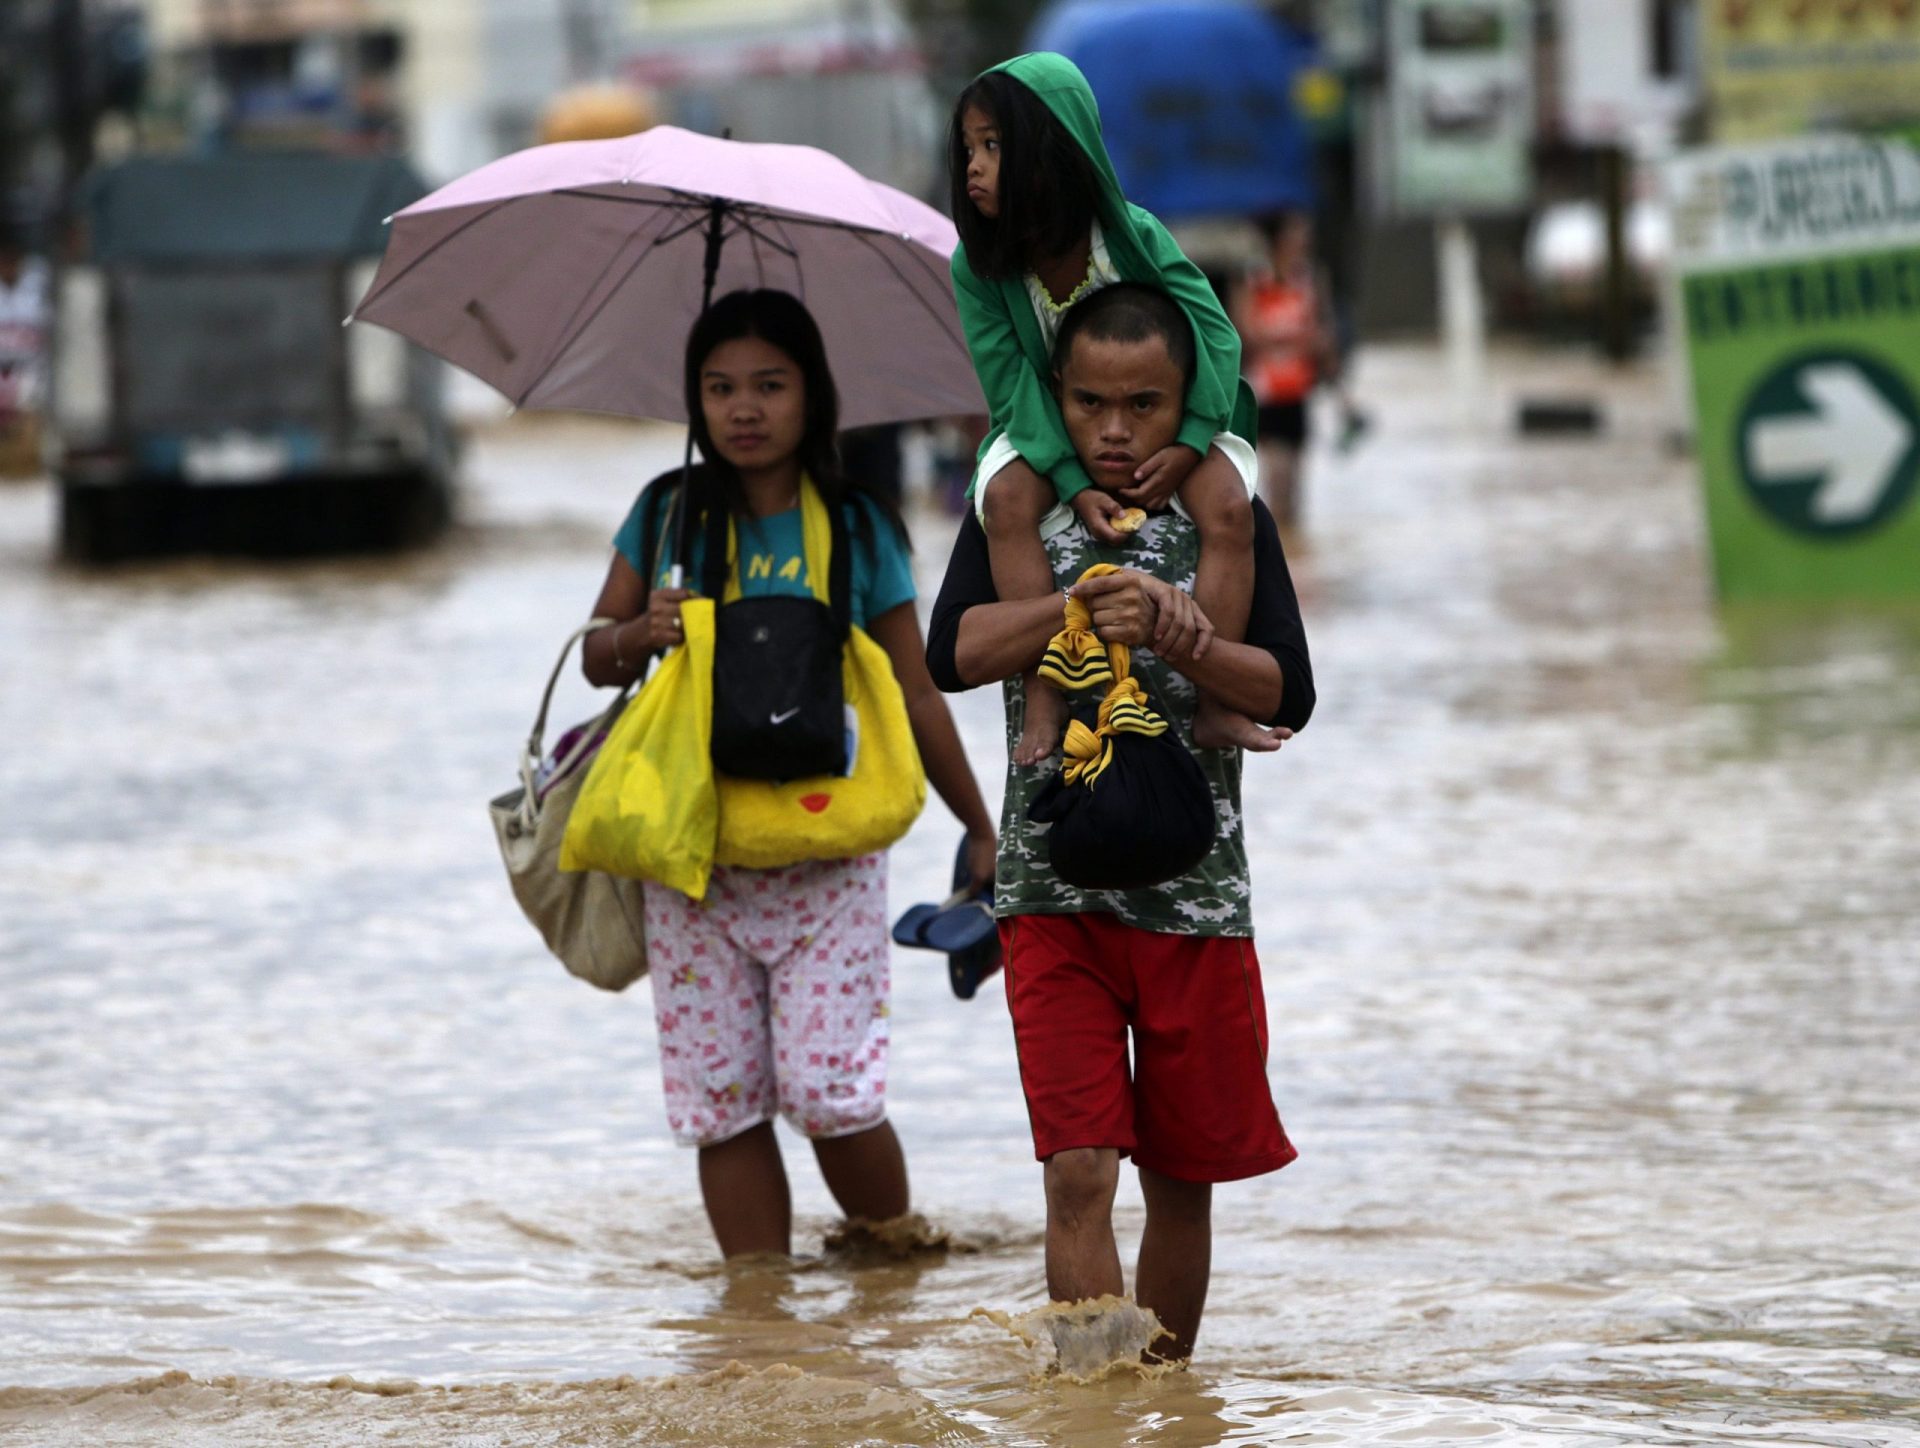 Tufão enfraquece após causar quatro mortos nas Filipinas